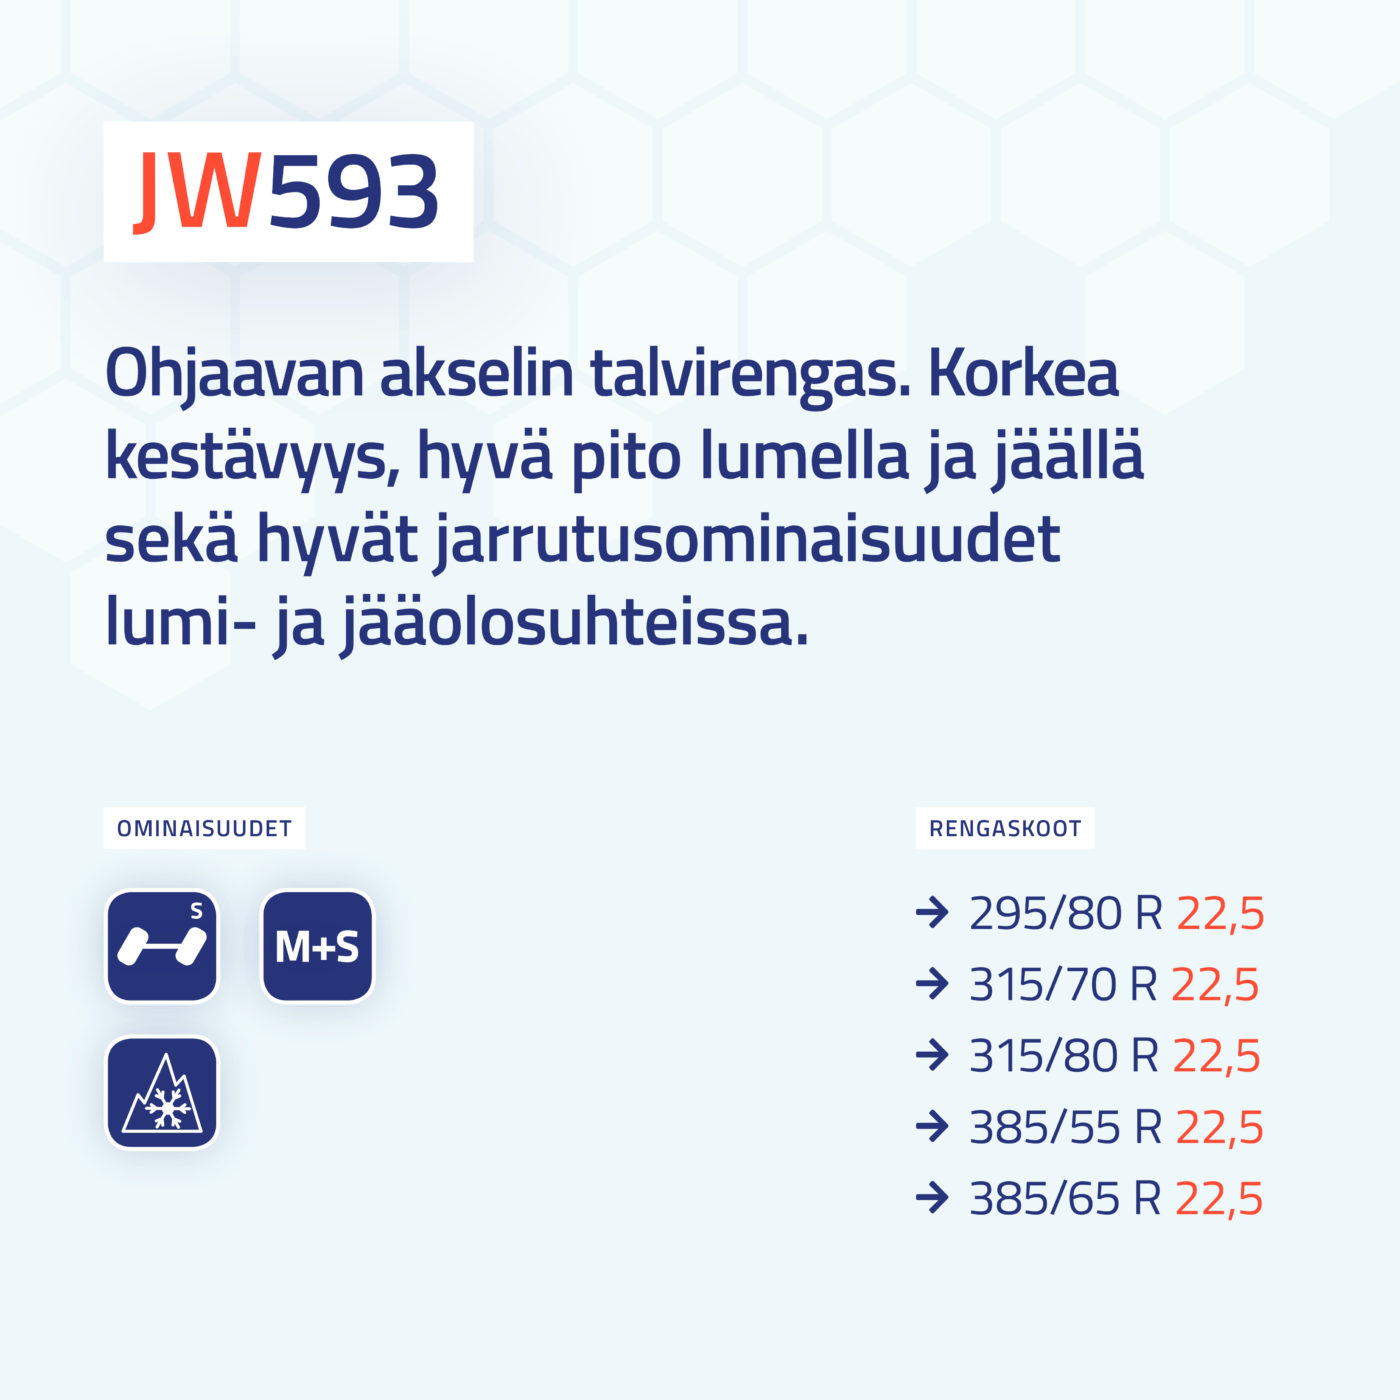 JT593